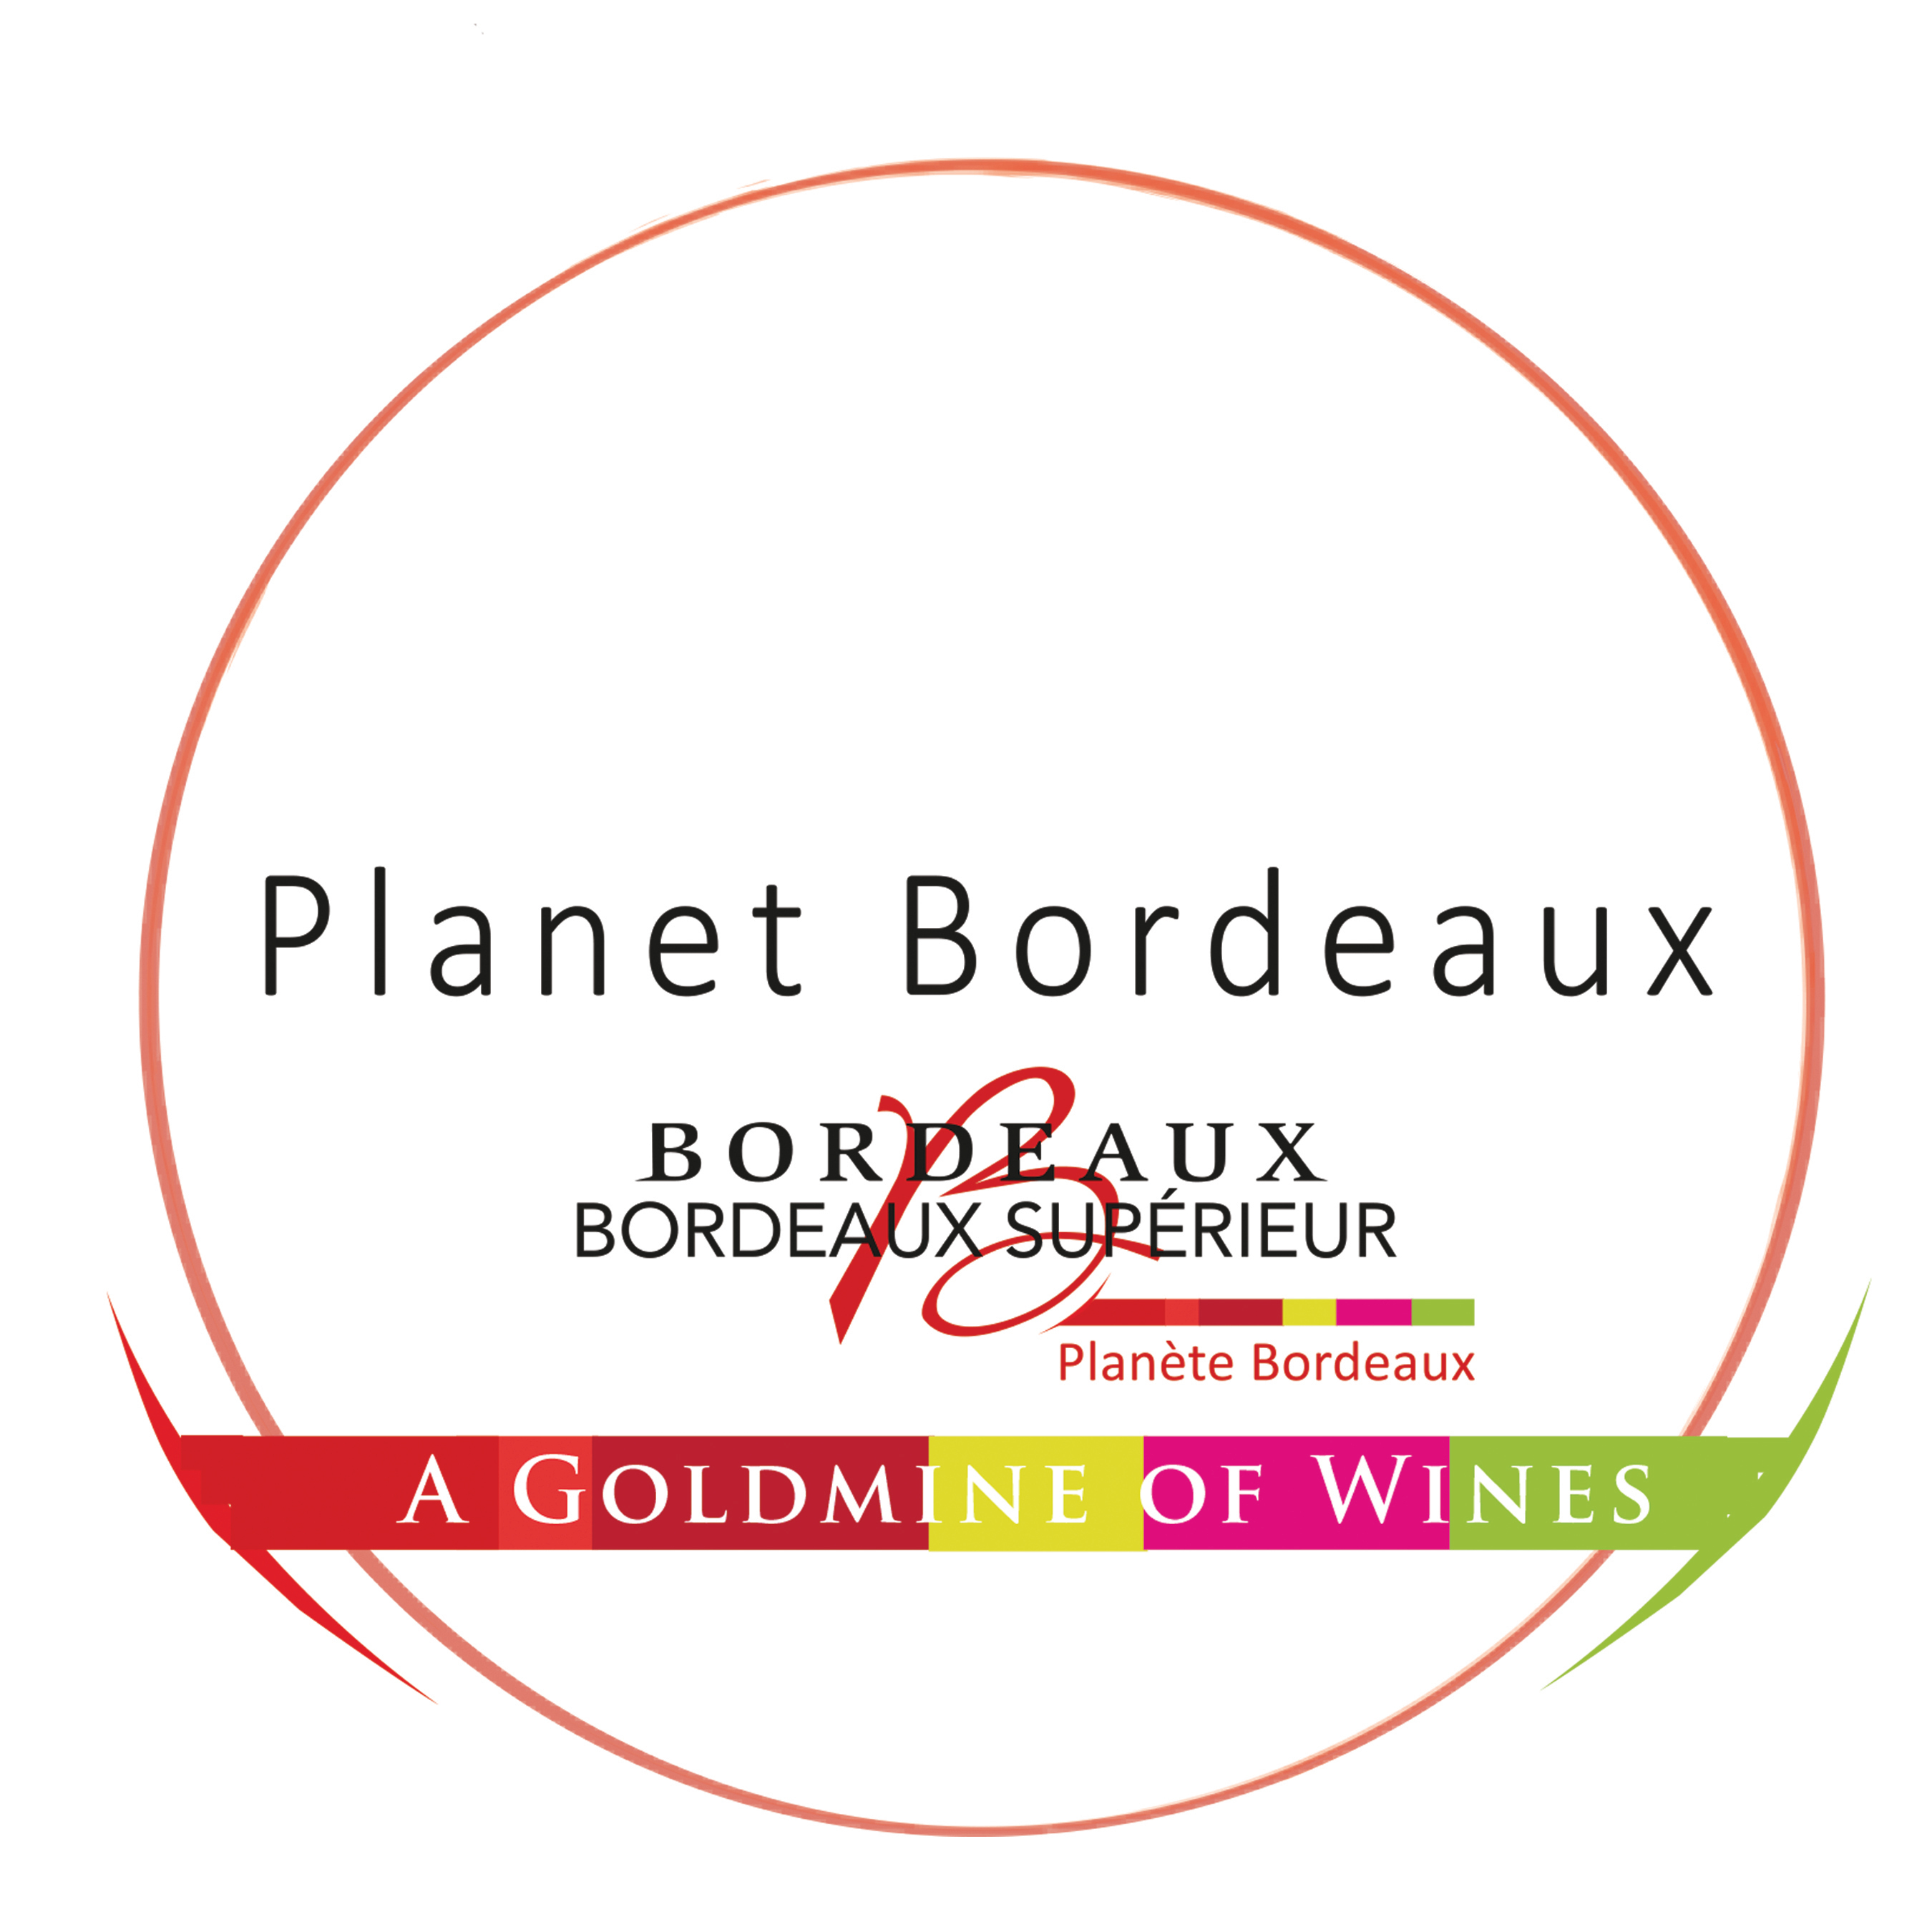 Planet Bordeaux